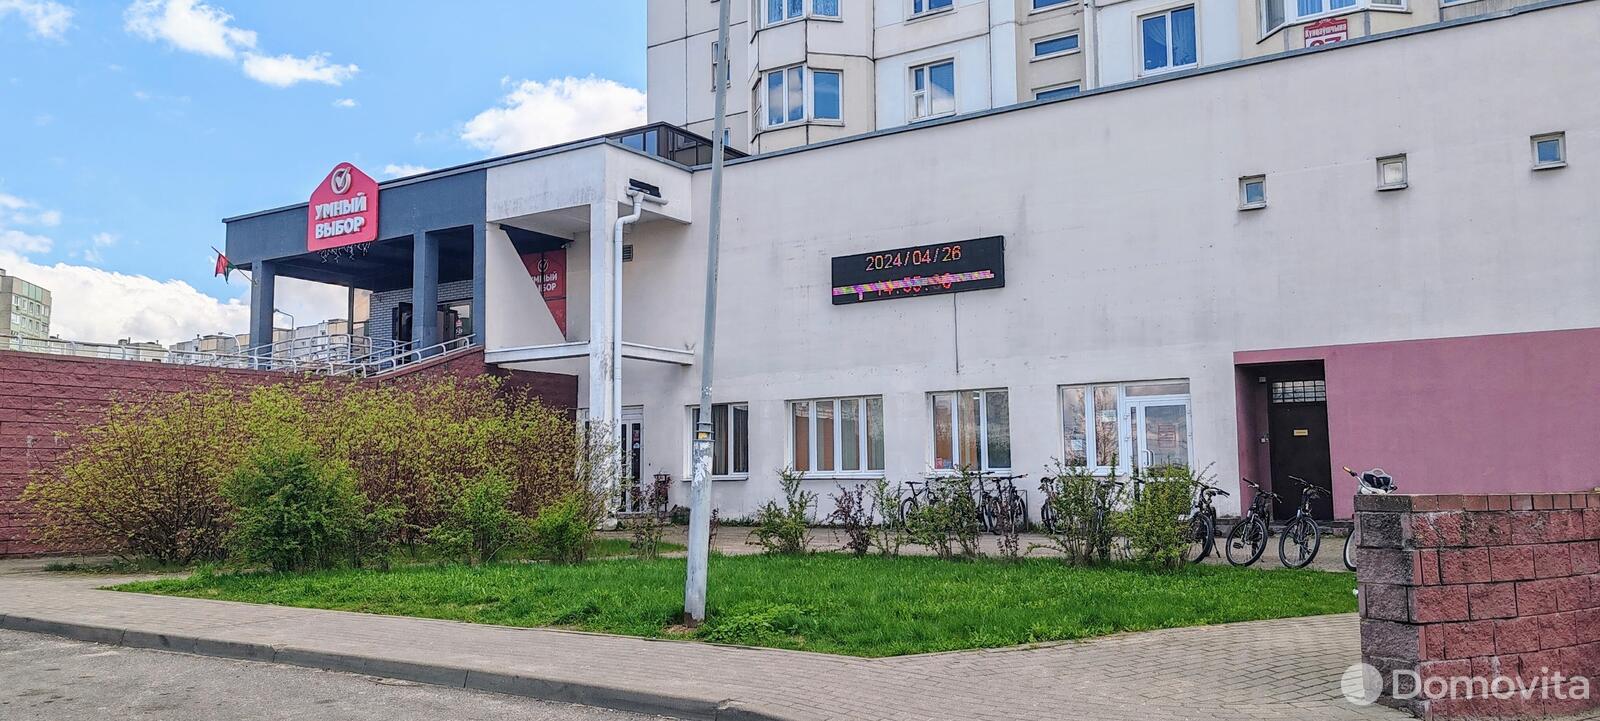 Аренда офиса на ул. Кунцевщина, д. 37 в Минске, 1526EUR, код 12066 - фото 1